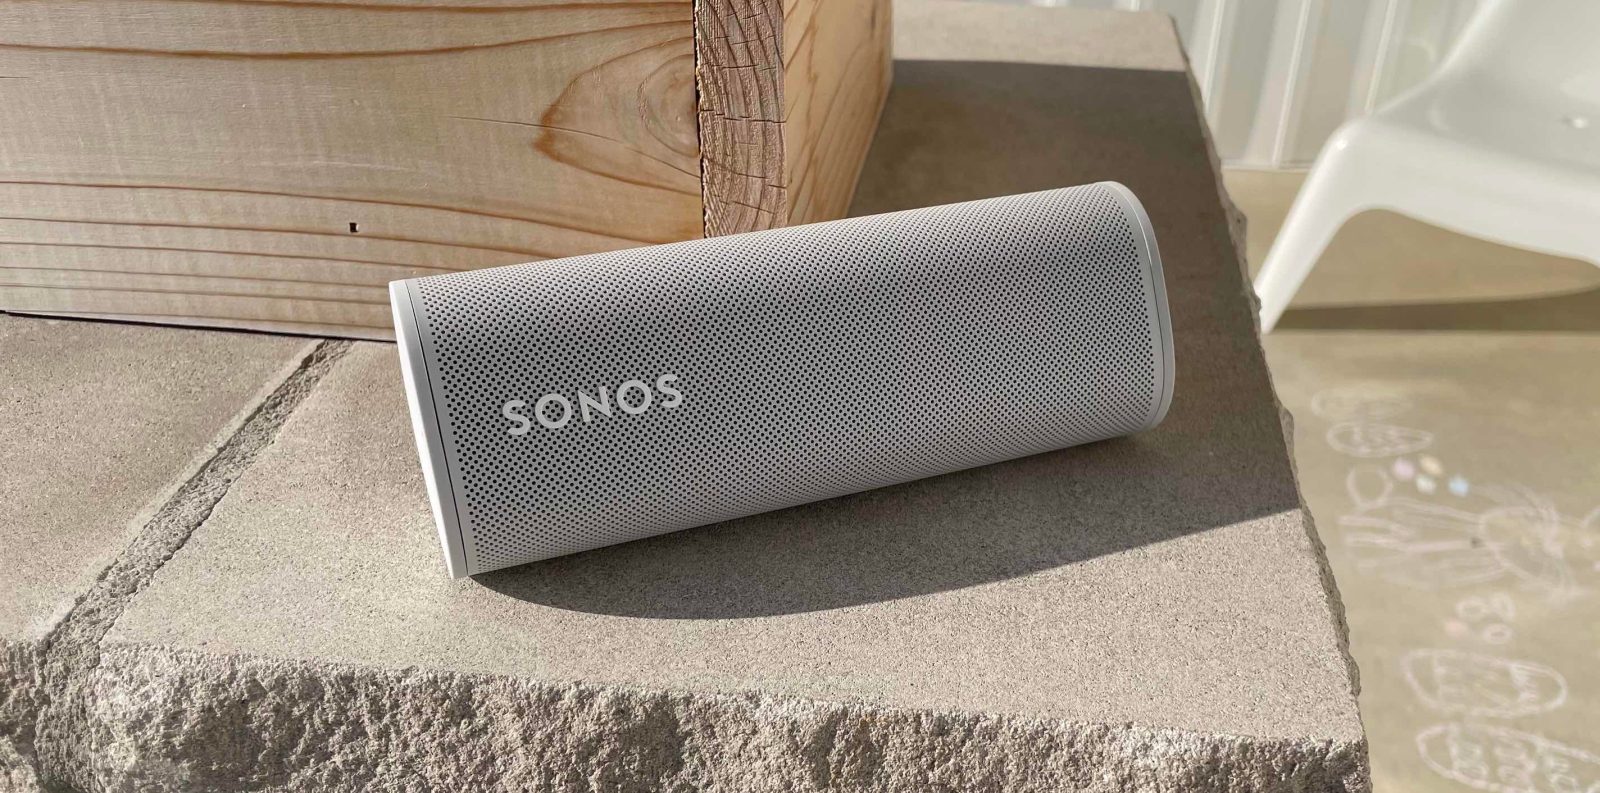 Sonos Roam ultra-portable speaker on its side